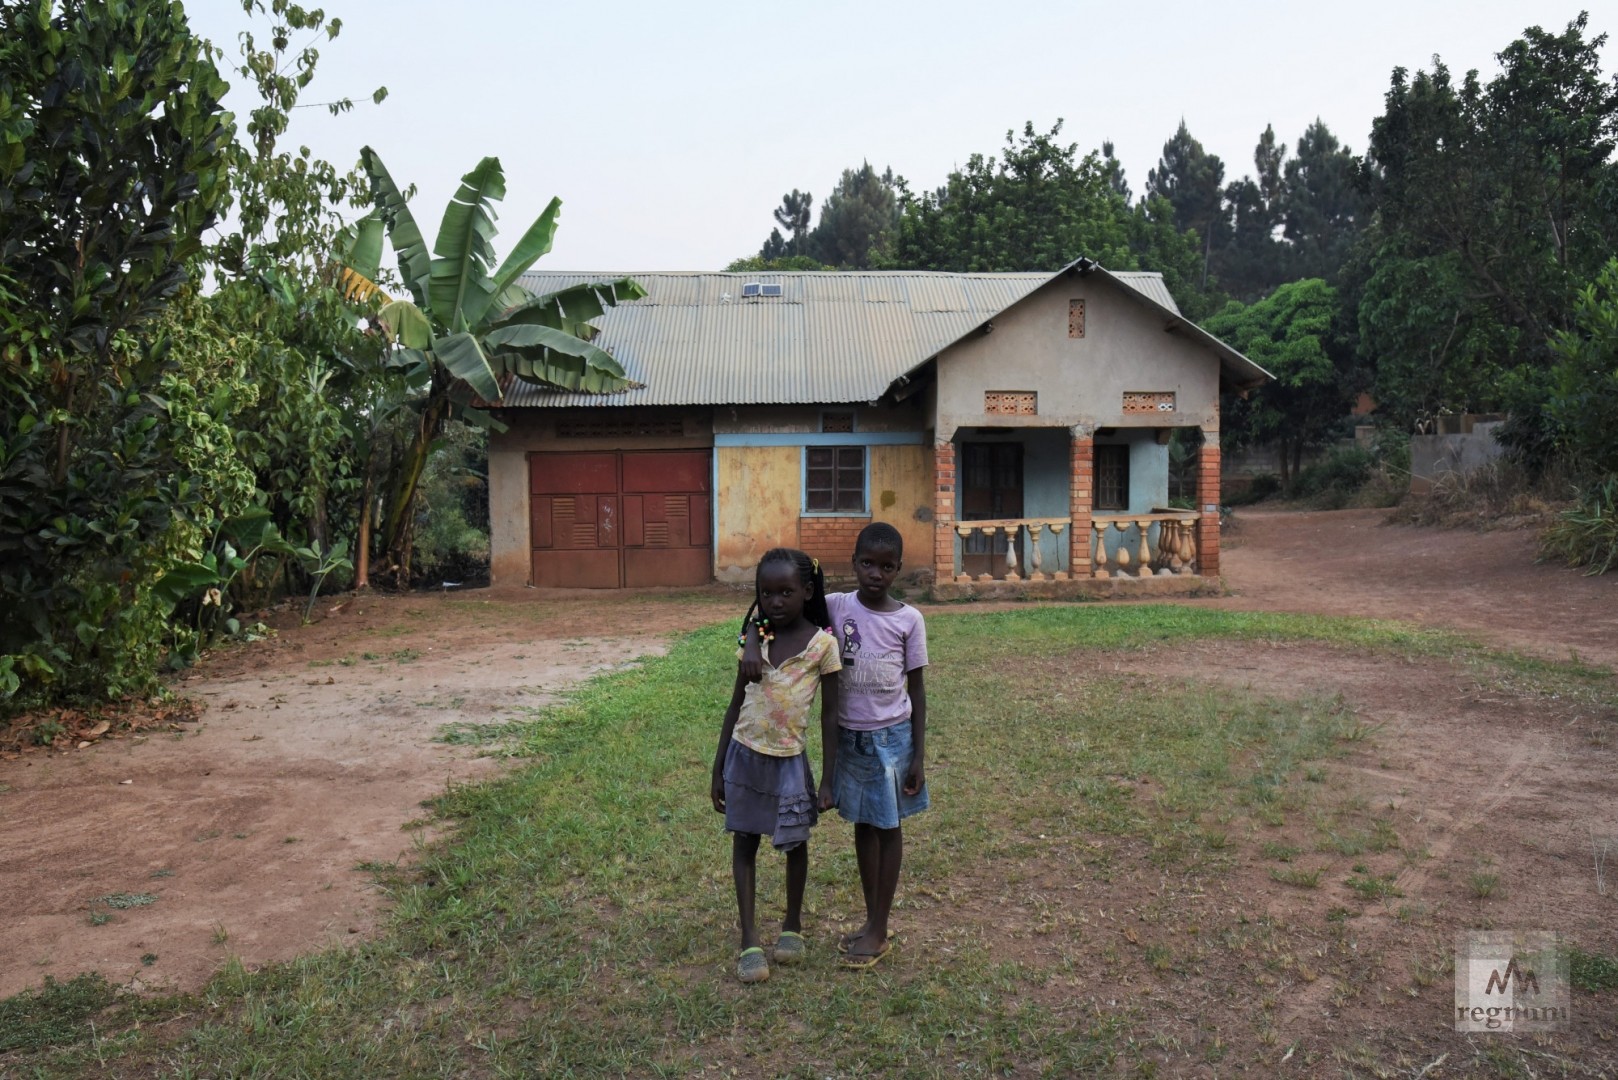 Фортуна (8 лет) и Лаурен (6 лет) на одной из улиц в Масинди. Фортуна попала в приют в ноябре 2011 года, став первым приёмным ребёнком в Window of Life. Масинди, Уганда